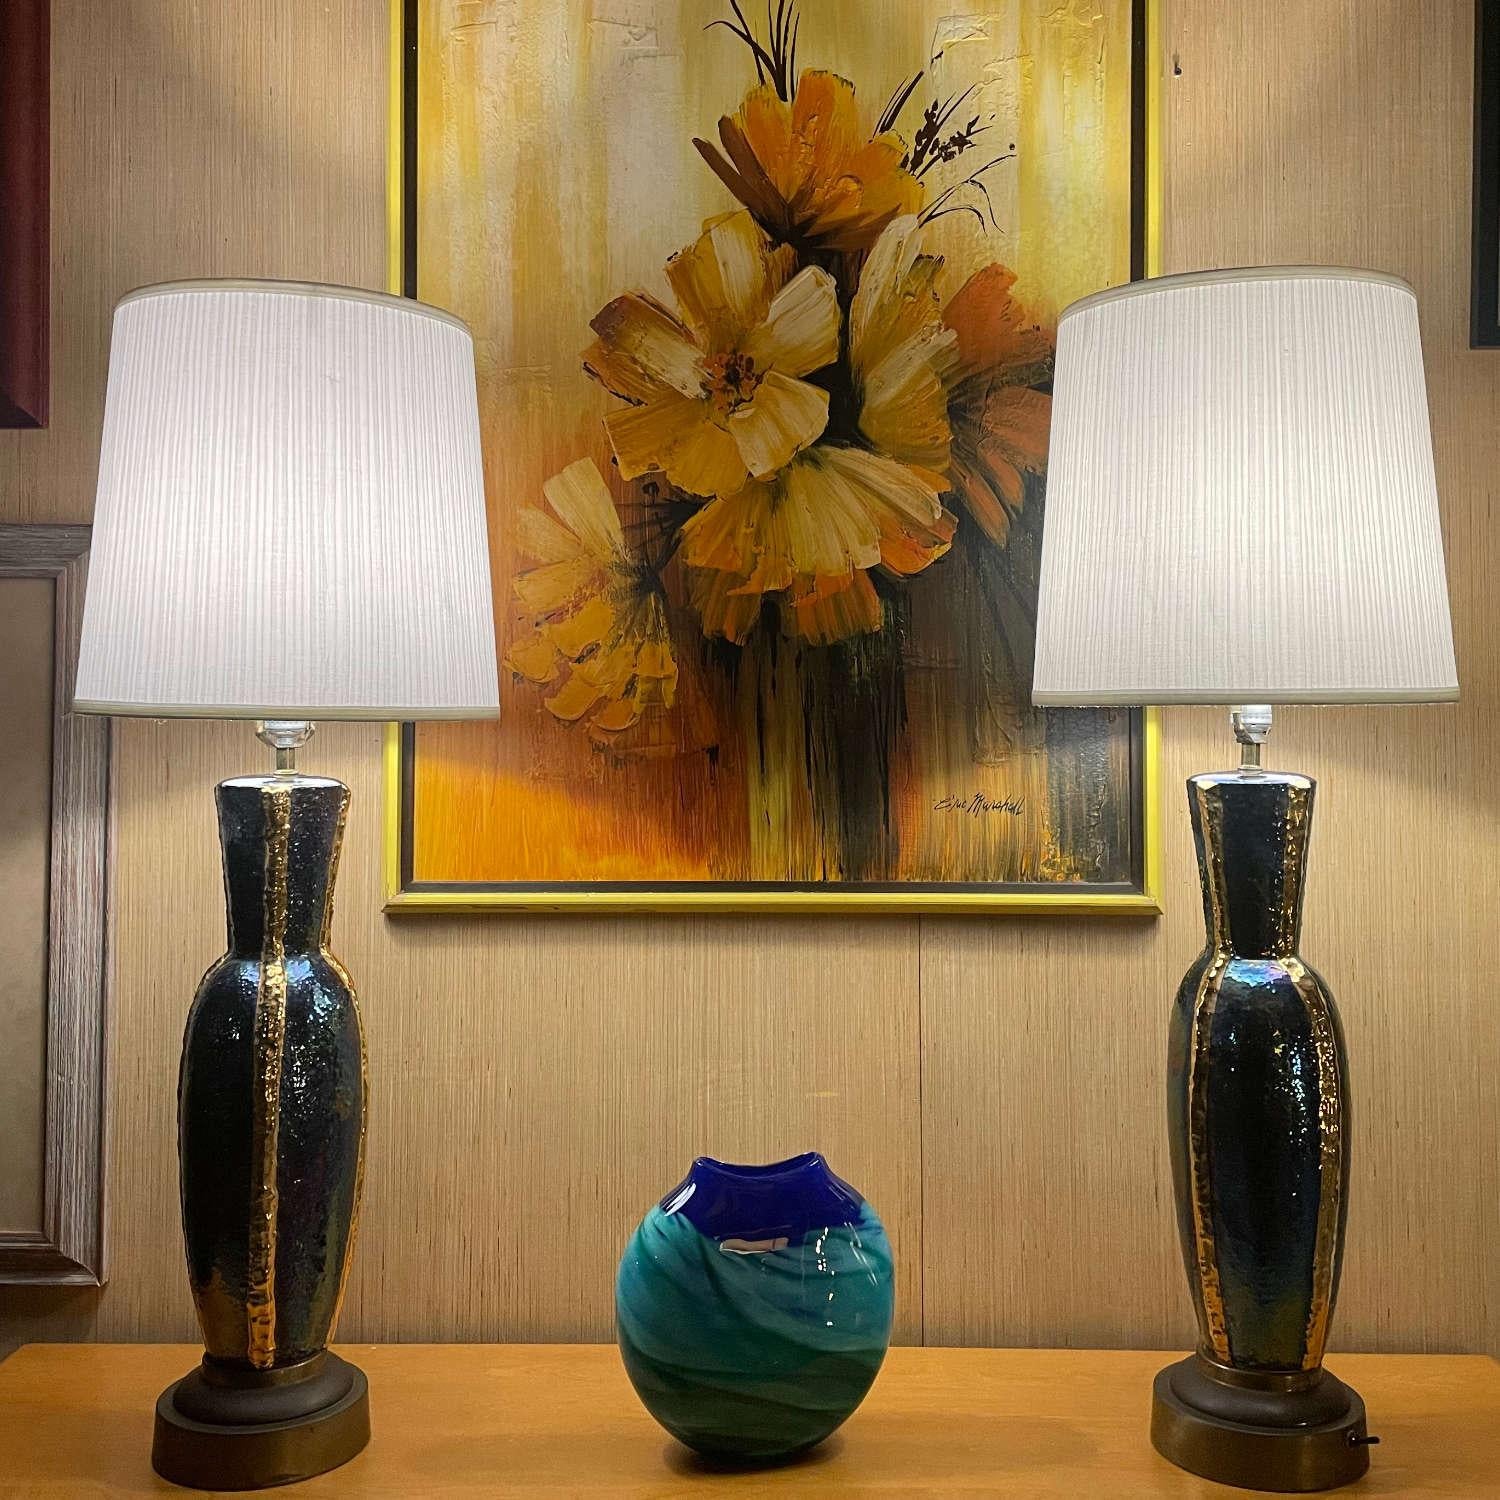 Paar blau und gold schillernde Mid-Century Modern Tischlampen. Die eleganten Lampen scheinen ihre Farbe zu ändern, wenn das Licht mit der Keramikglasur spielt. Metallische Goldbänder verlaufen vertikal durch die urnenförmigen Lampen. Oben auf jeder